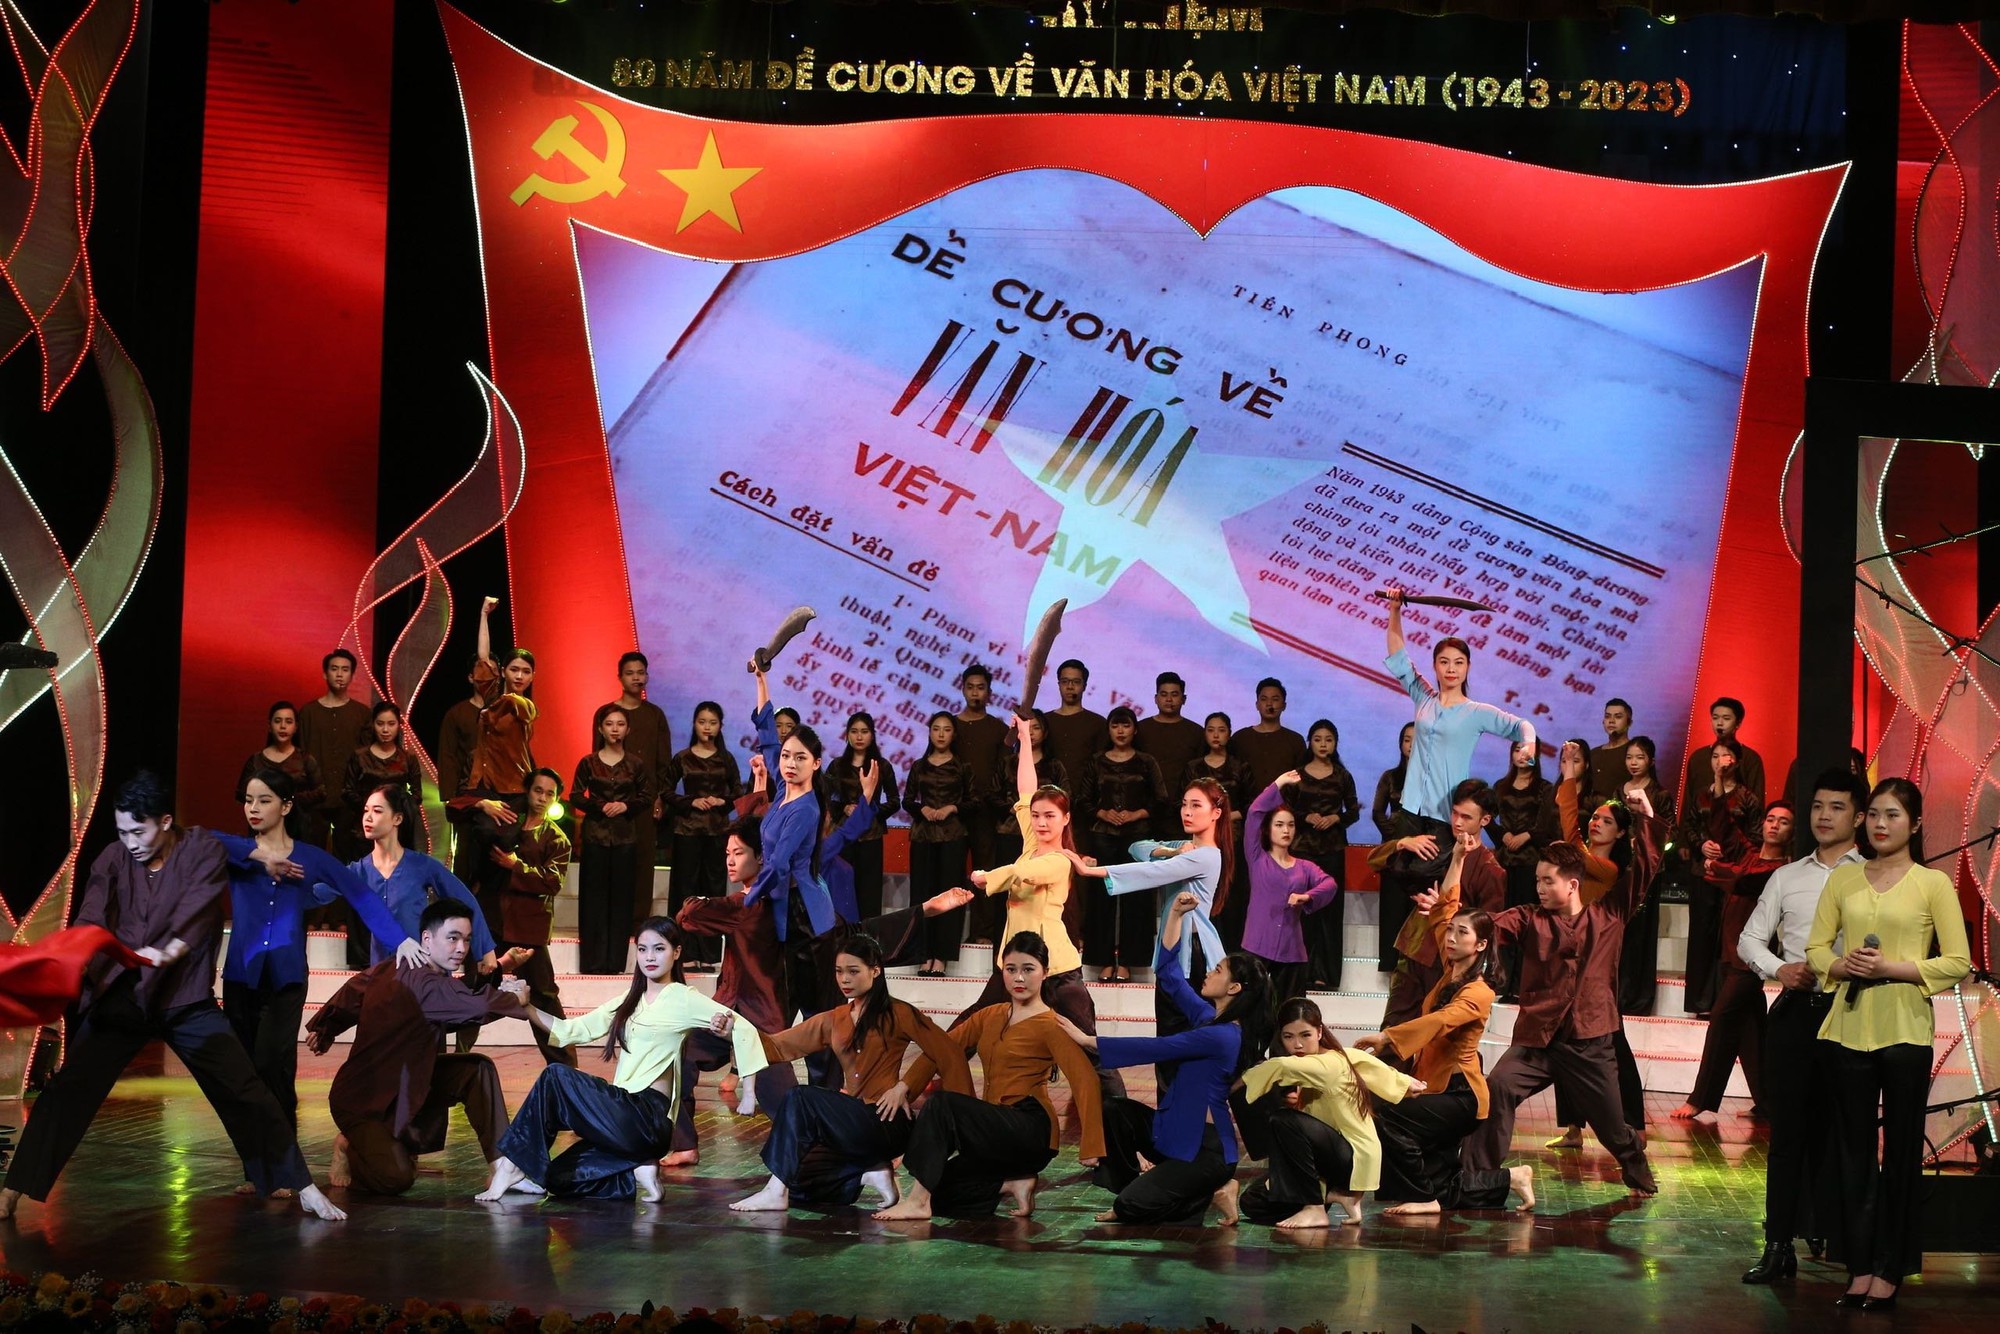 Bộ VHTTDL tổ chức Kỷ niệm 80 năm ra đời Đề cương về Văn hóa Việt Nam